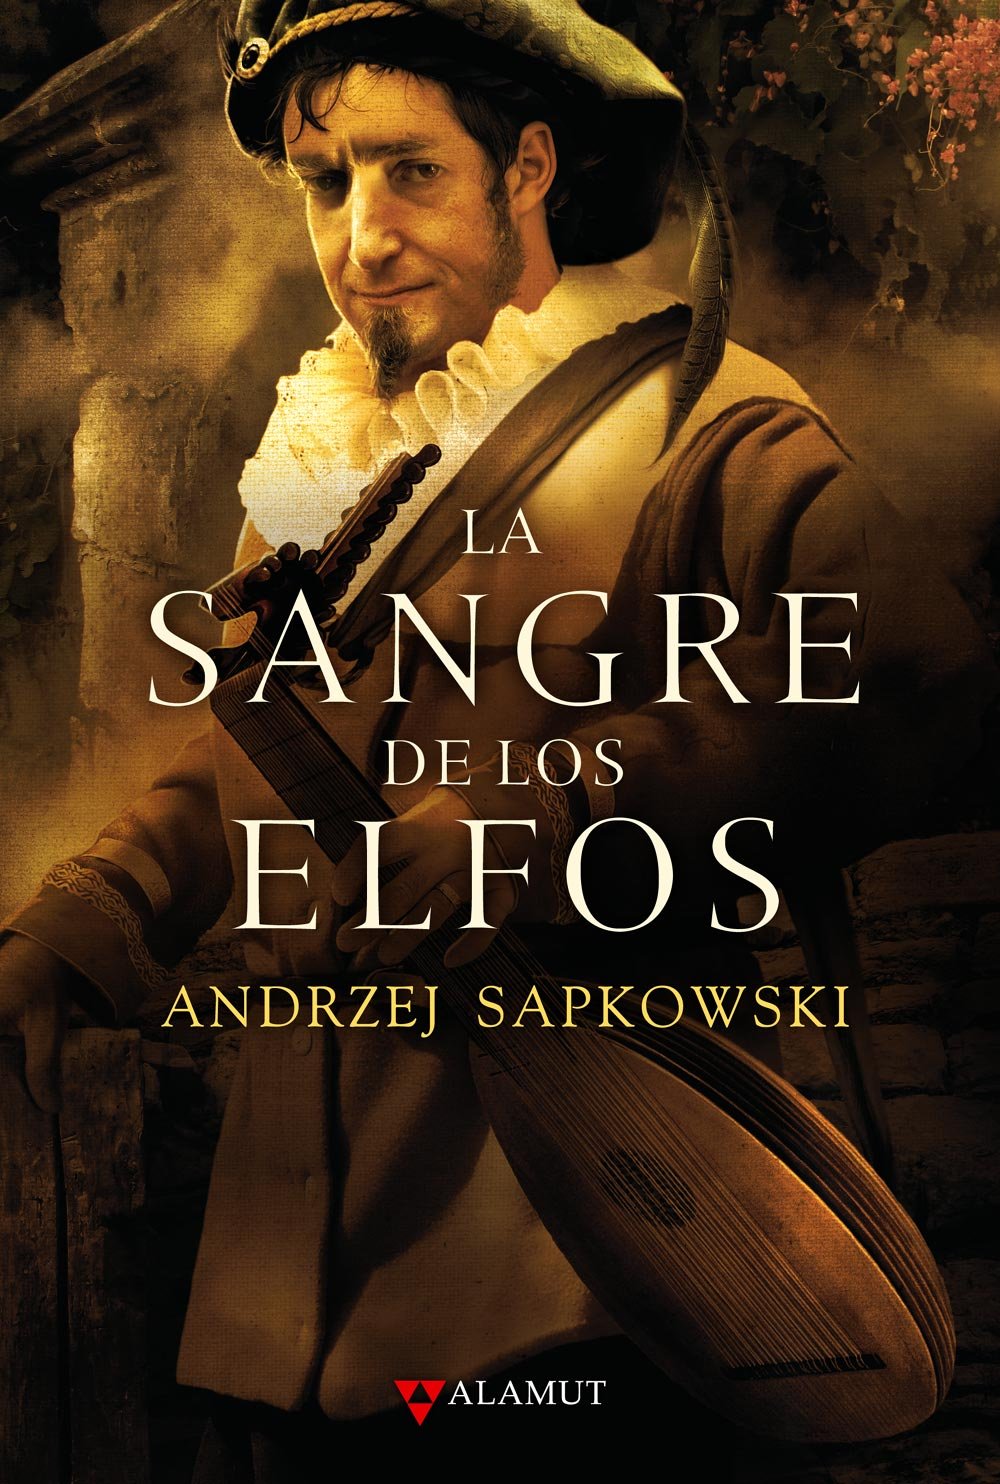 Libro de audio Saga de Geralt de Rivia: La Sangre de los Elfos – Andrzej Sapkowski